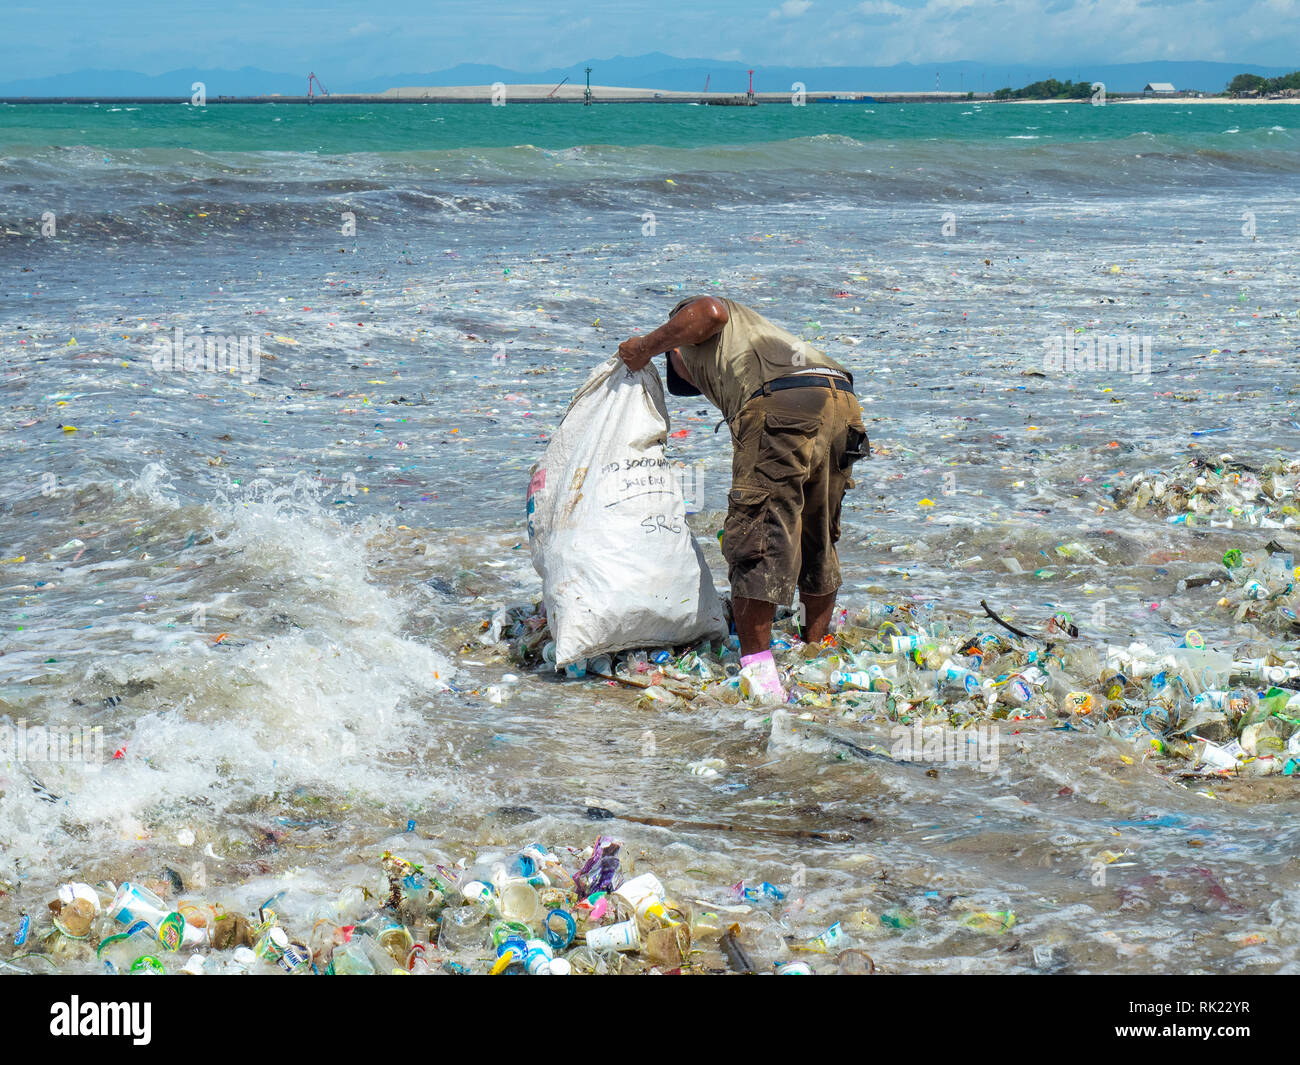 La pollution, l'homme seul ramasser des bouteilles en plastique, des tasses, des pailles et autres détritus échoués sur la plage de La Baie de Jimbaran, Bali Indonésie.. Banque D'Images